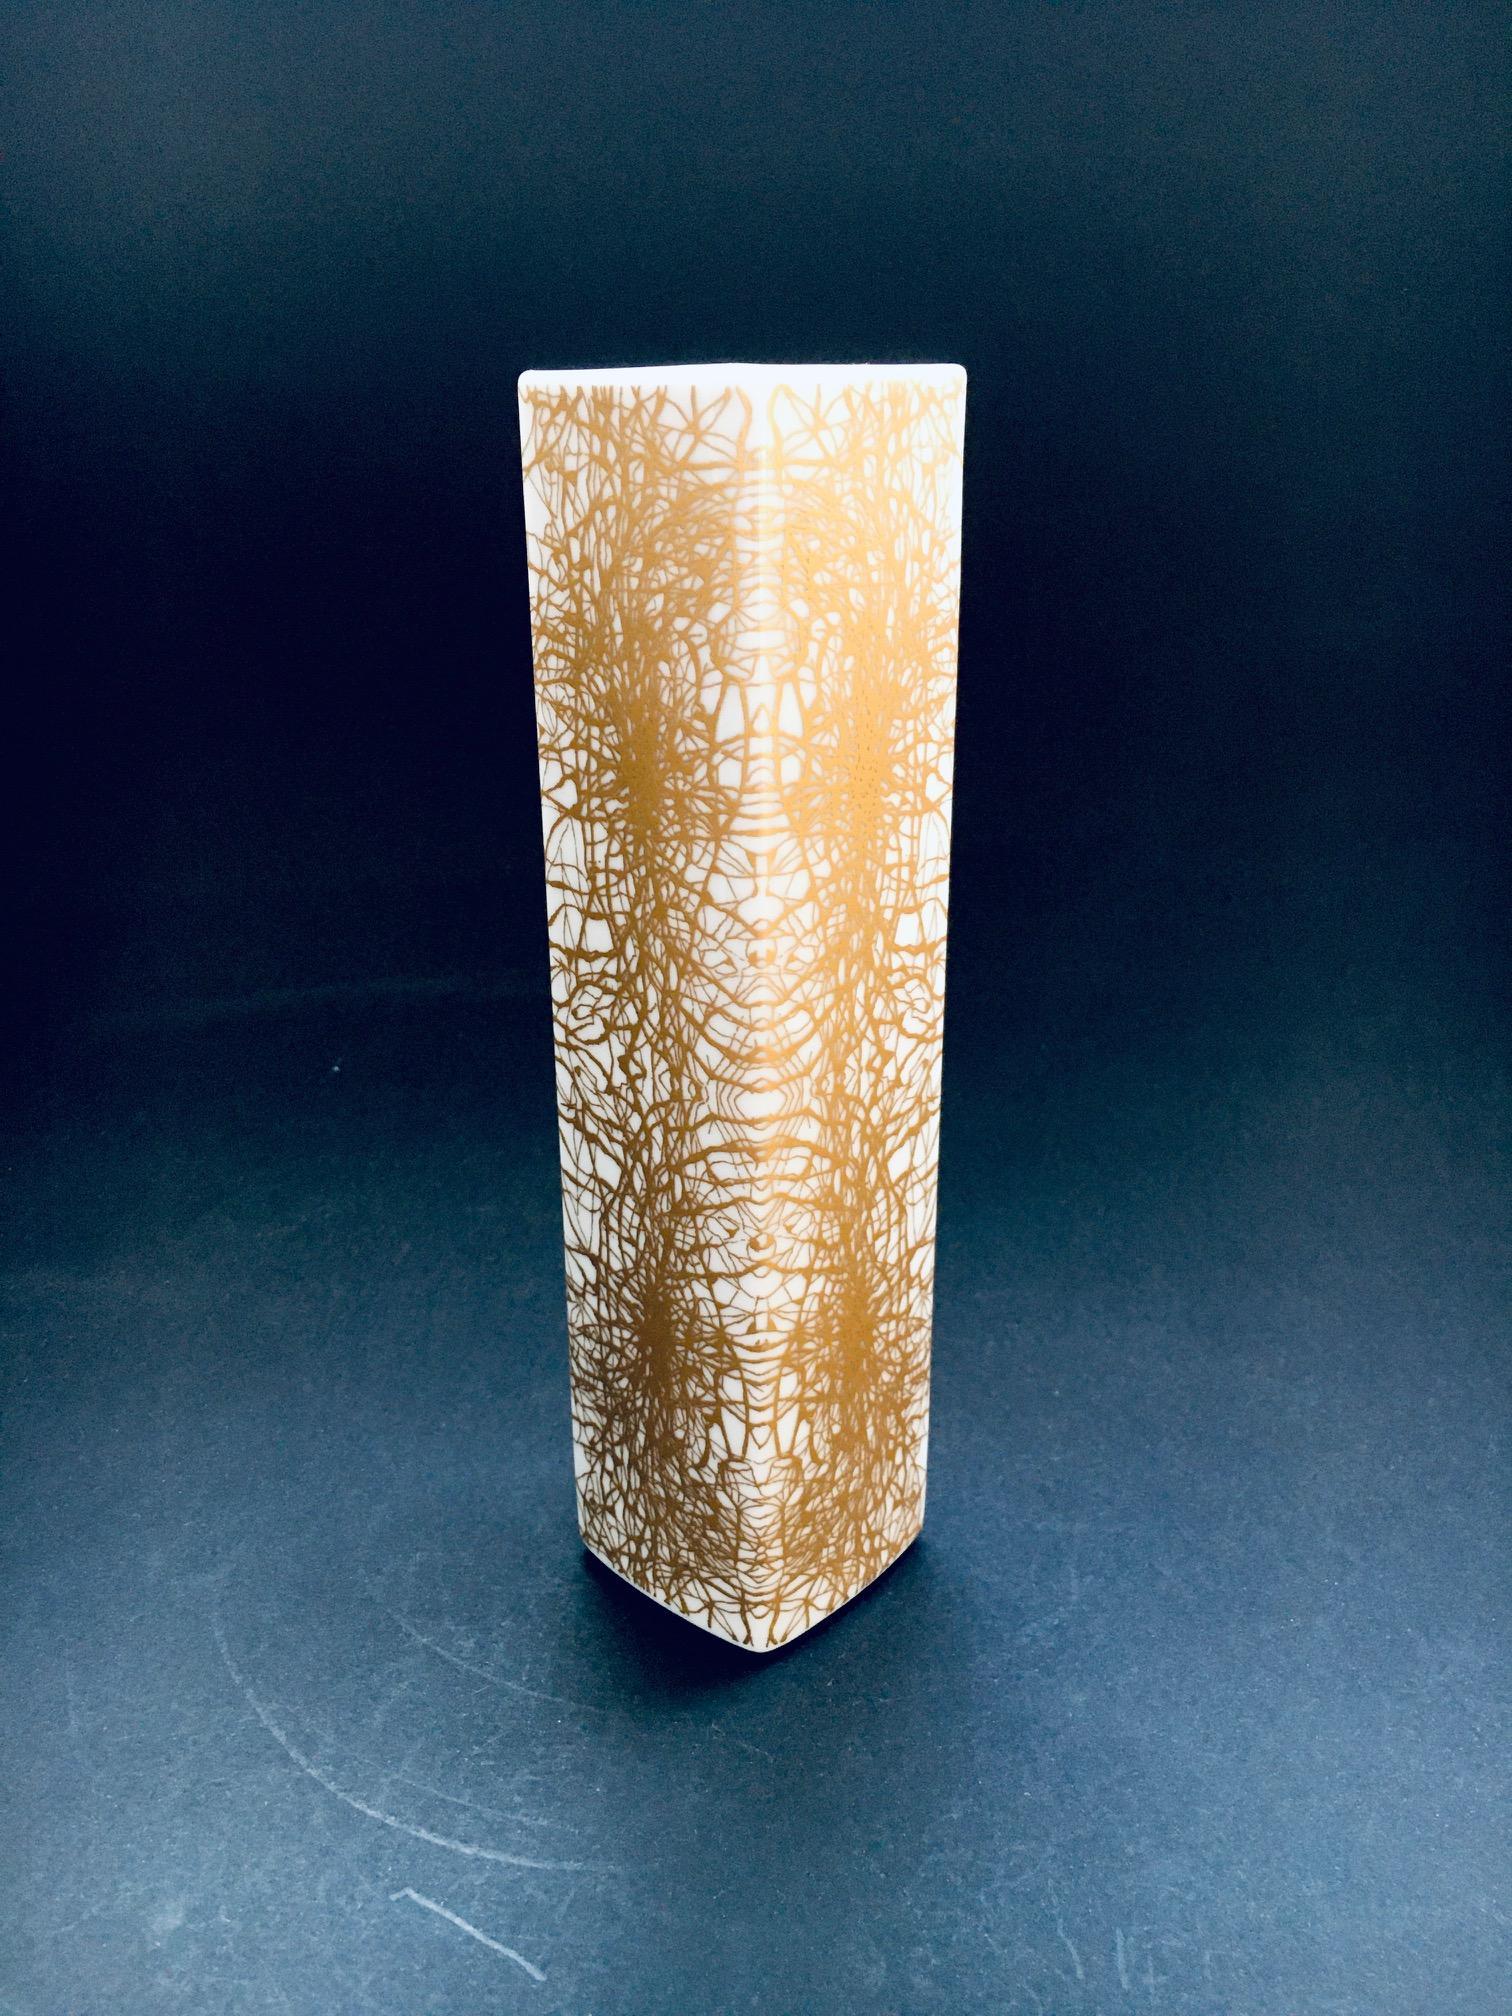 Vintage Midcentury Modern Design Gold Glazed Art Porcelain Ceramic Flower Vase by Heinrich & Co SELB Bavaria, Germany 1970's. Porcelaine blanche avec motif abstrait doré. Rare vase en parfait état. Marqué sur le fond. Dimensions : 23 cm x 6 cm x 6